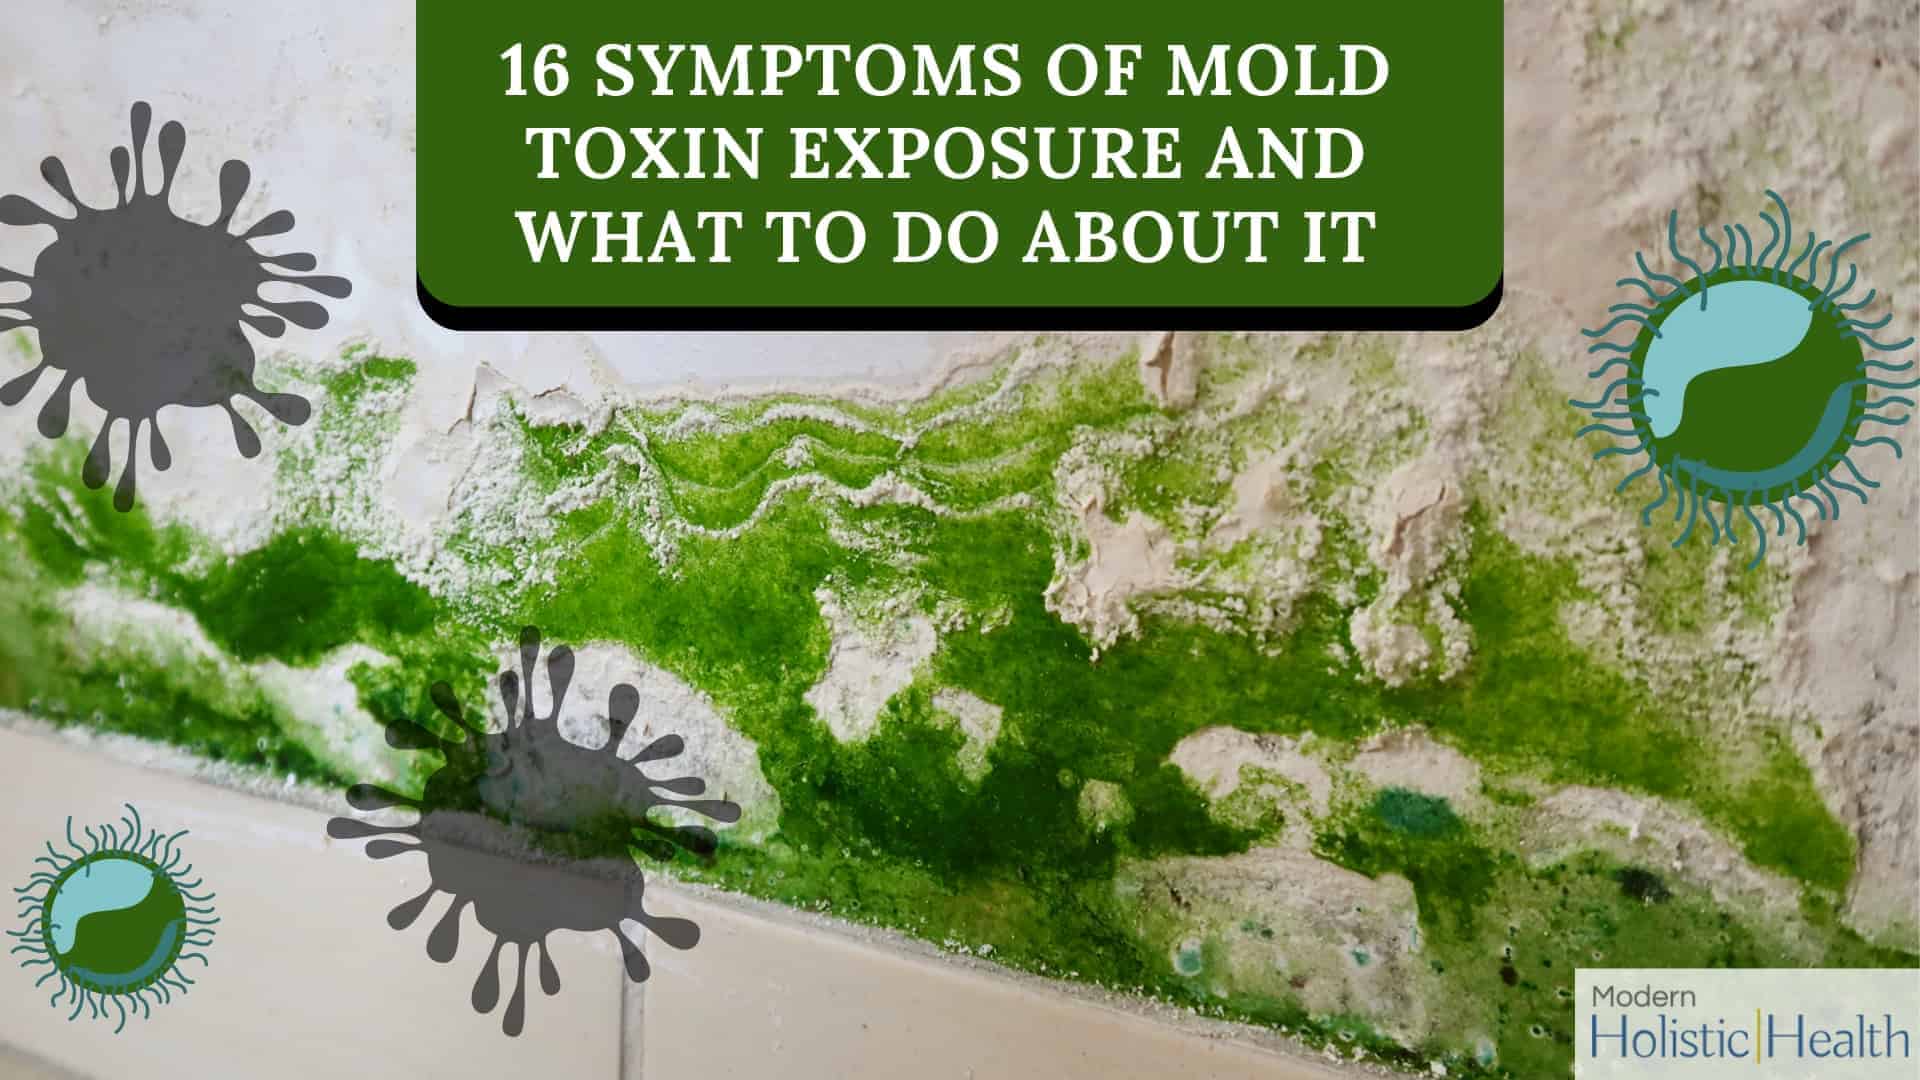 Symptoms of Mold Toxins (2)